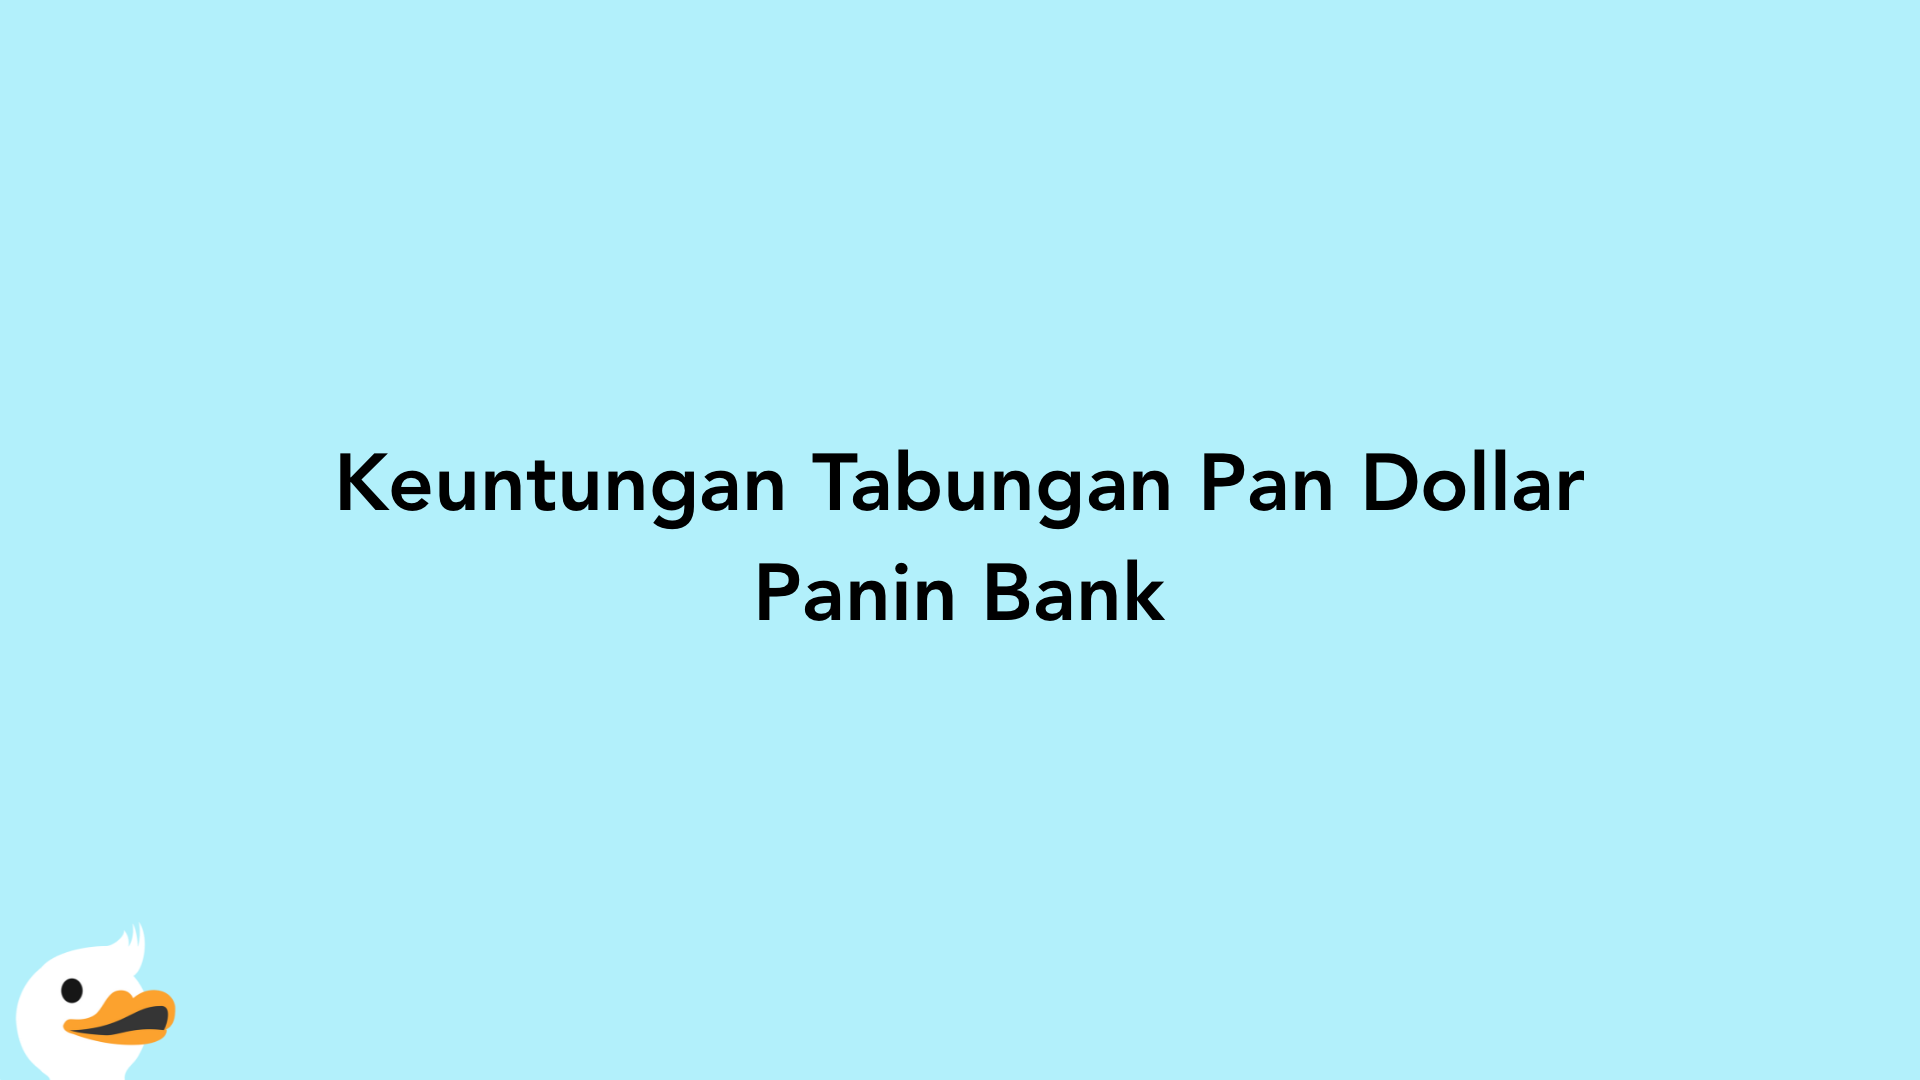 Keuntungan Tabungan Pan Dollar Panin Bank